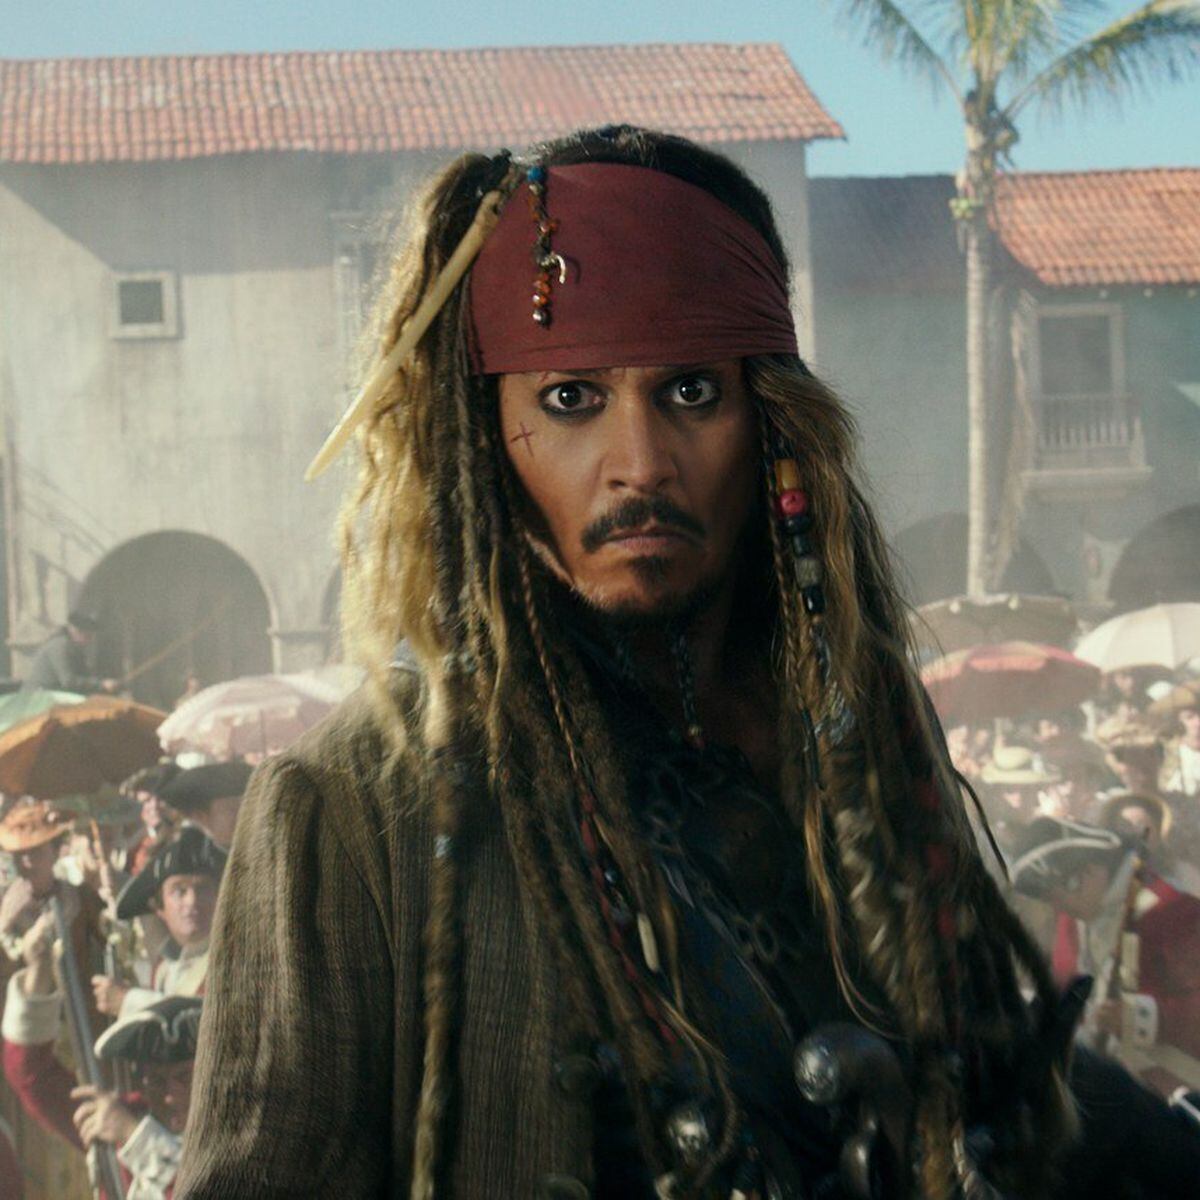 Amber Heard perde tempo de tela em 'Aquaman' após batalha judicial com Johnny  Depp - Estadão